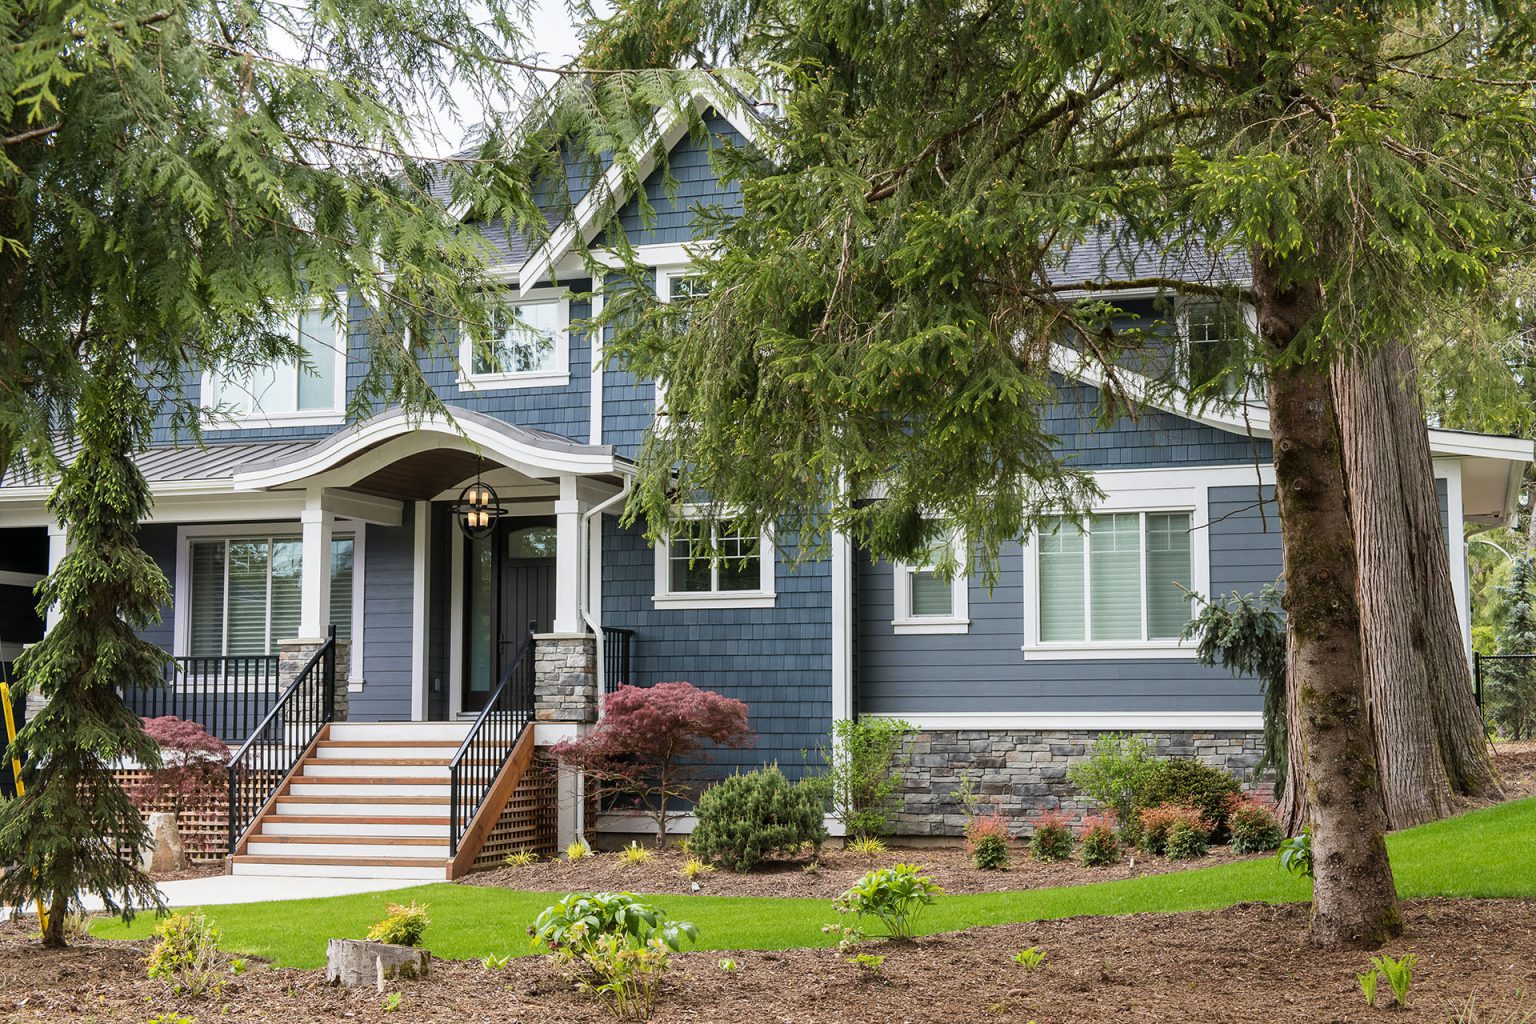 New home builder Maple Ridge Custom Homes